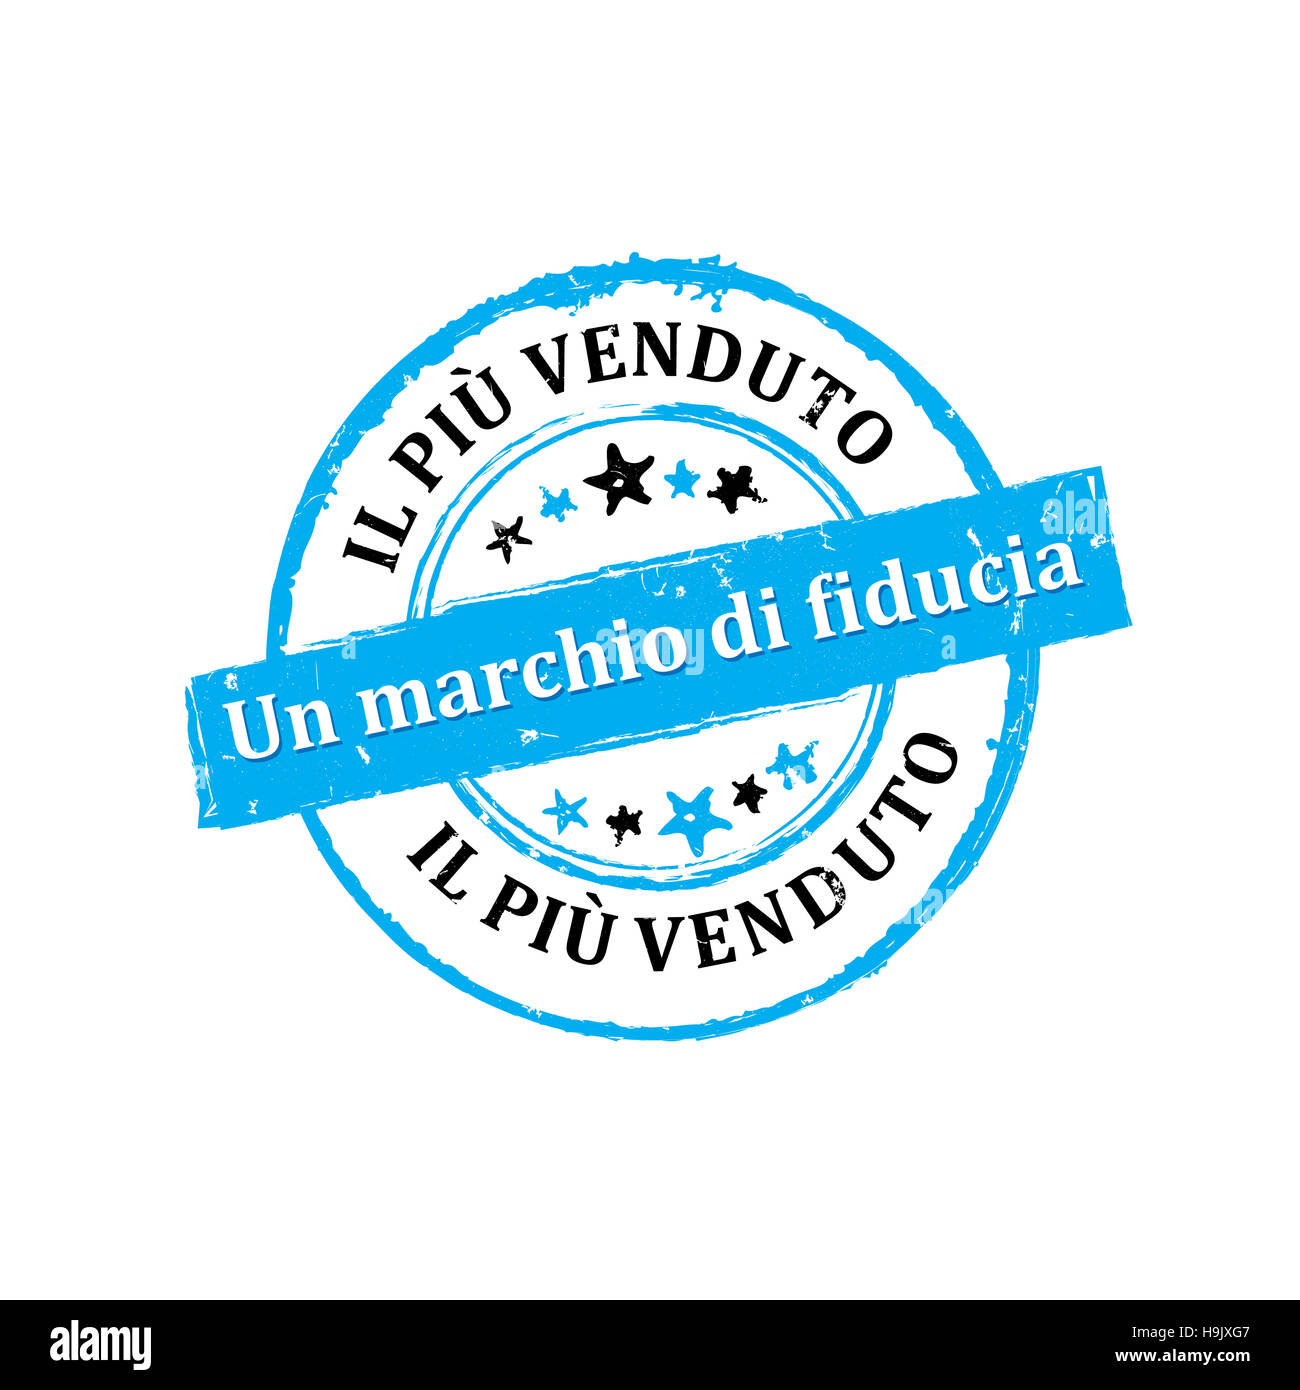 Il Piu Venduto, Un marchio di fiducia etichetta / Medaglia Stock Photo